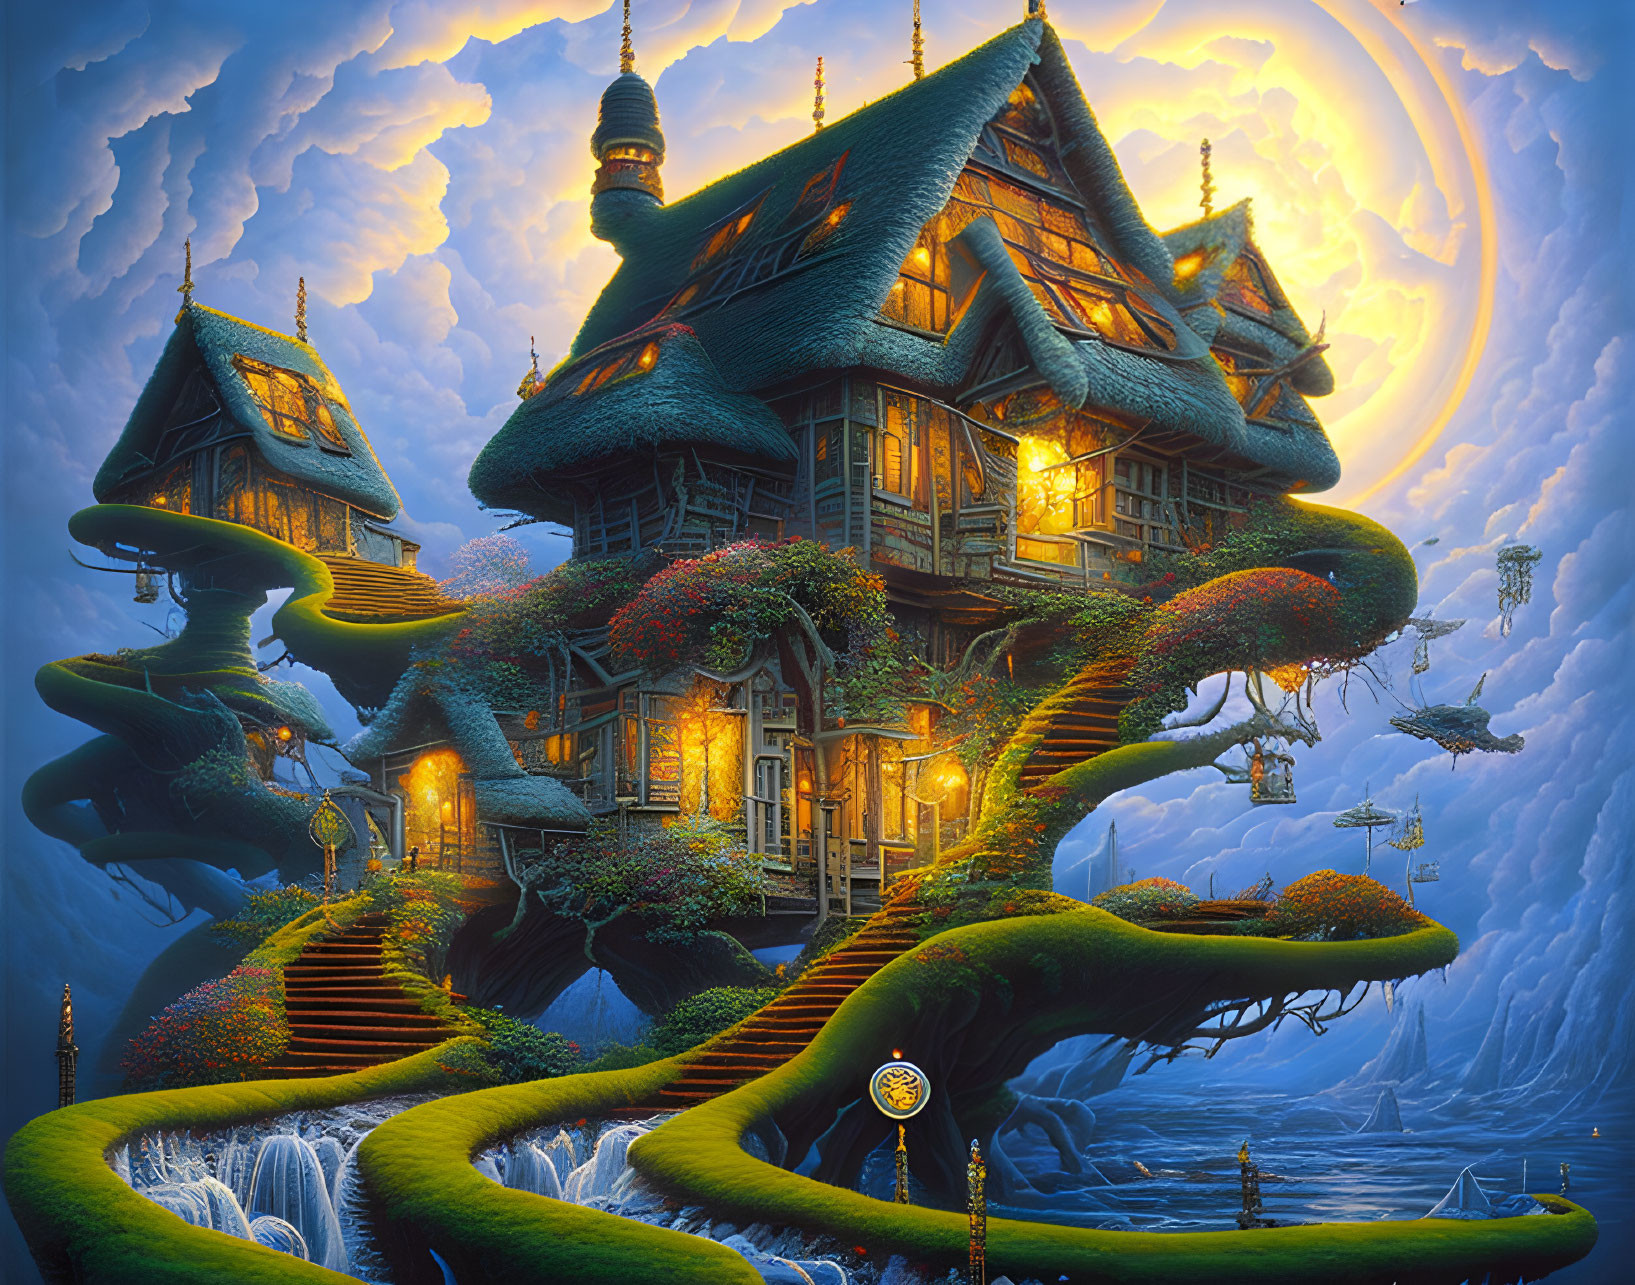 Fantasy artwork: Whimsical houses on giant trees under full moon